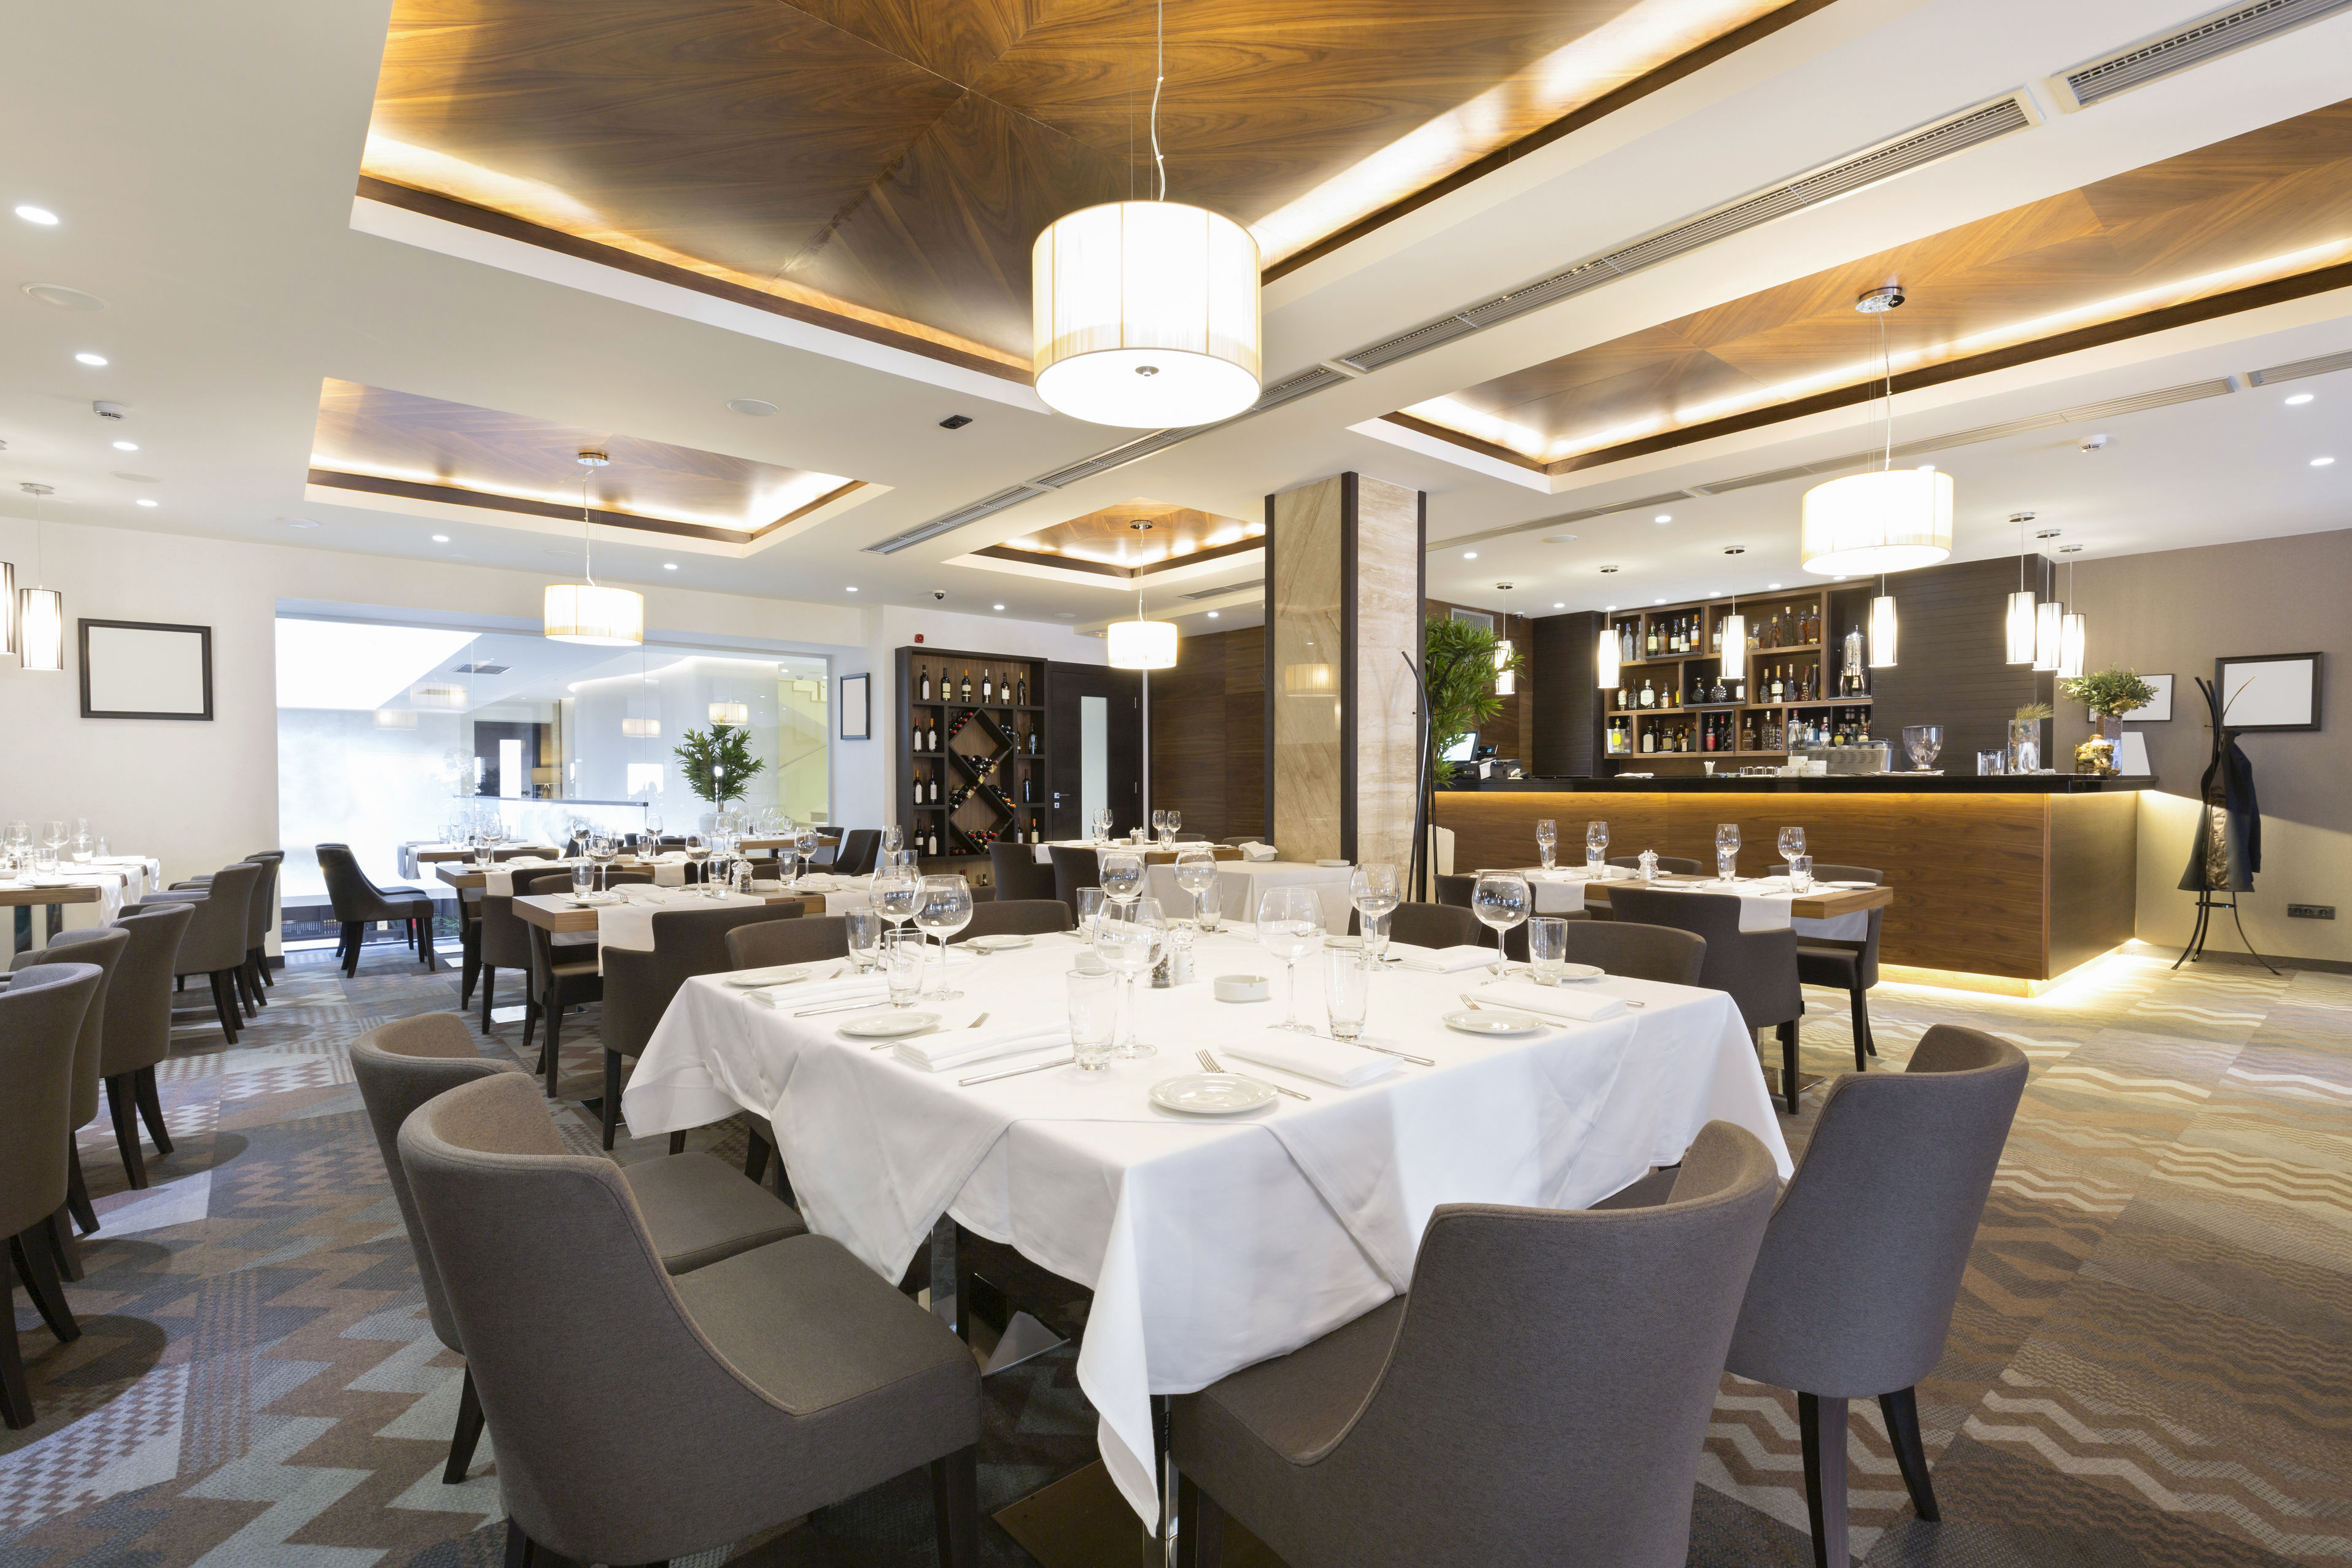 38034776 - elegant restaurant interior